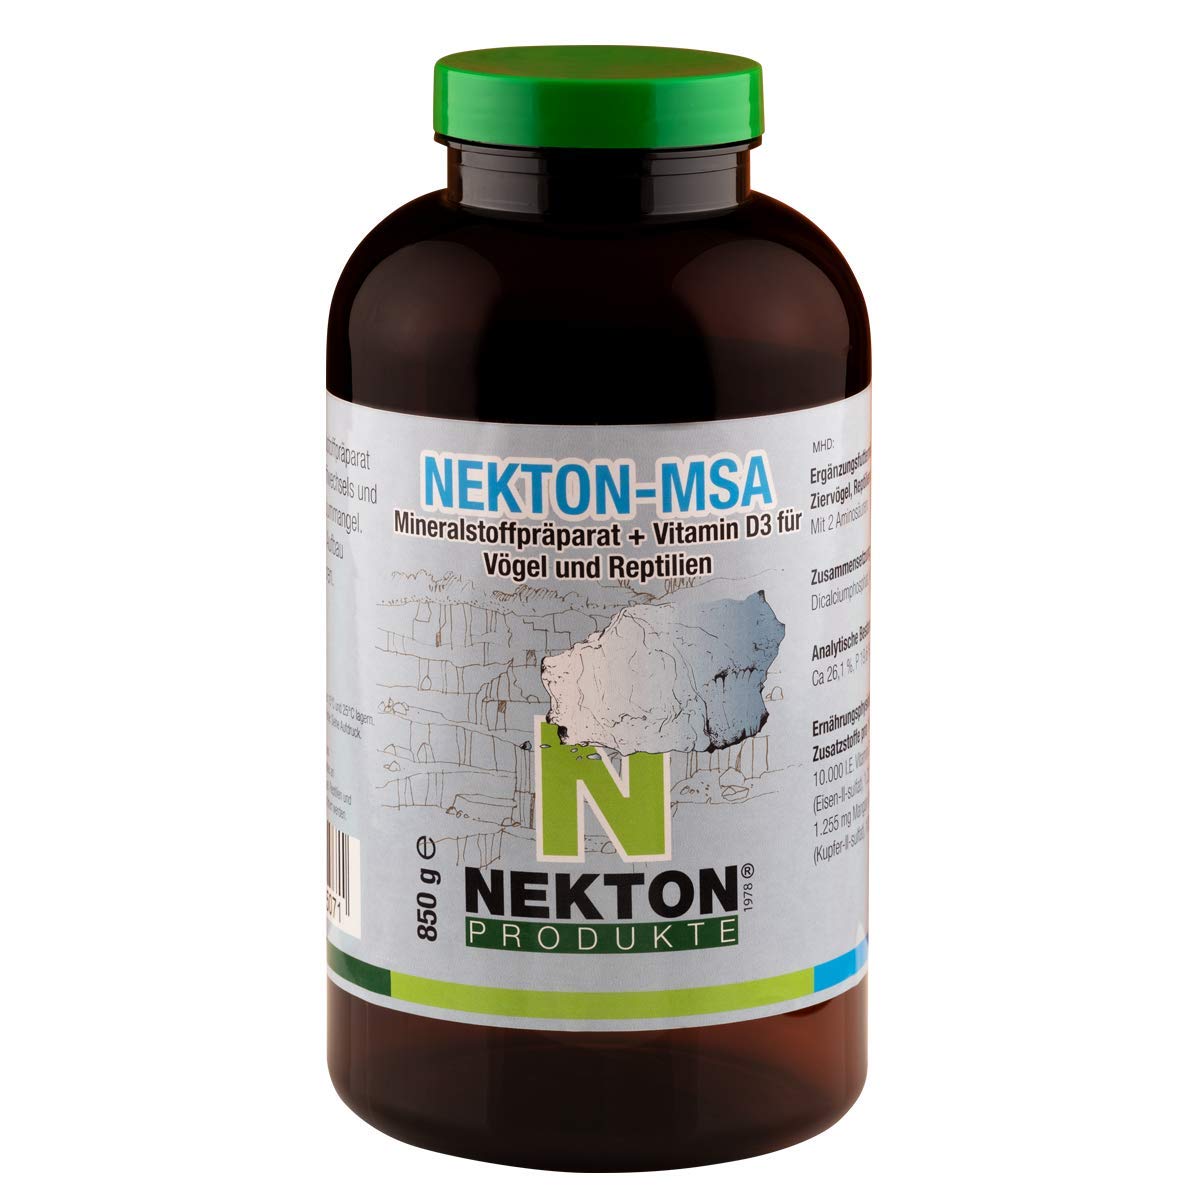 NEKTON-MSA | Hochwirksames Mineralstoffpräparat für Ziervögel, Reptilien und Amphibien | (850g)